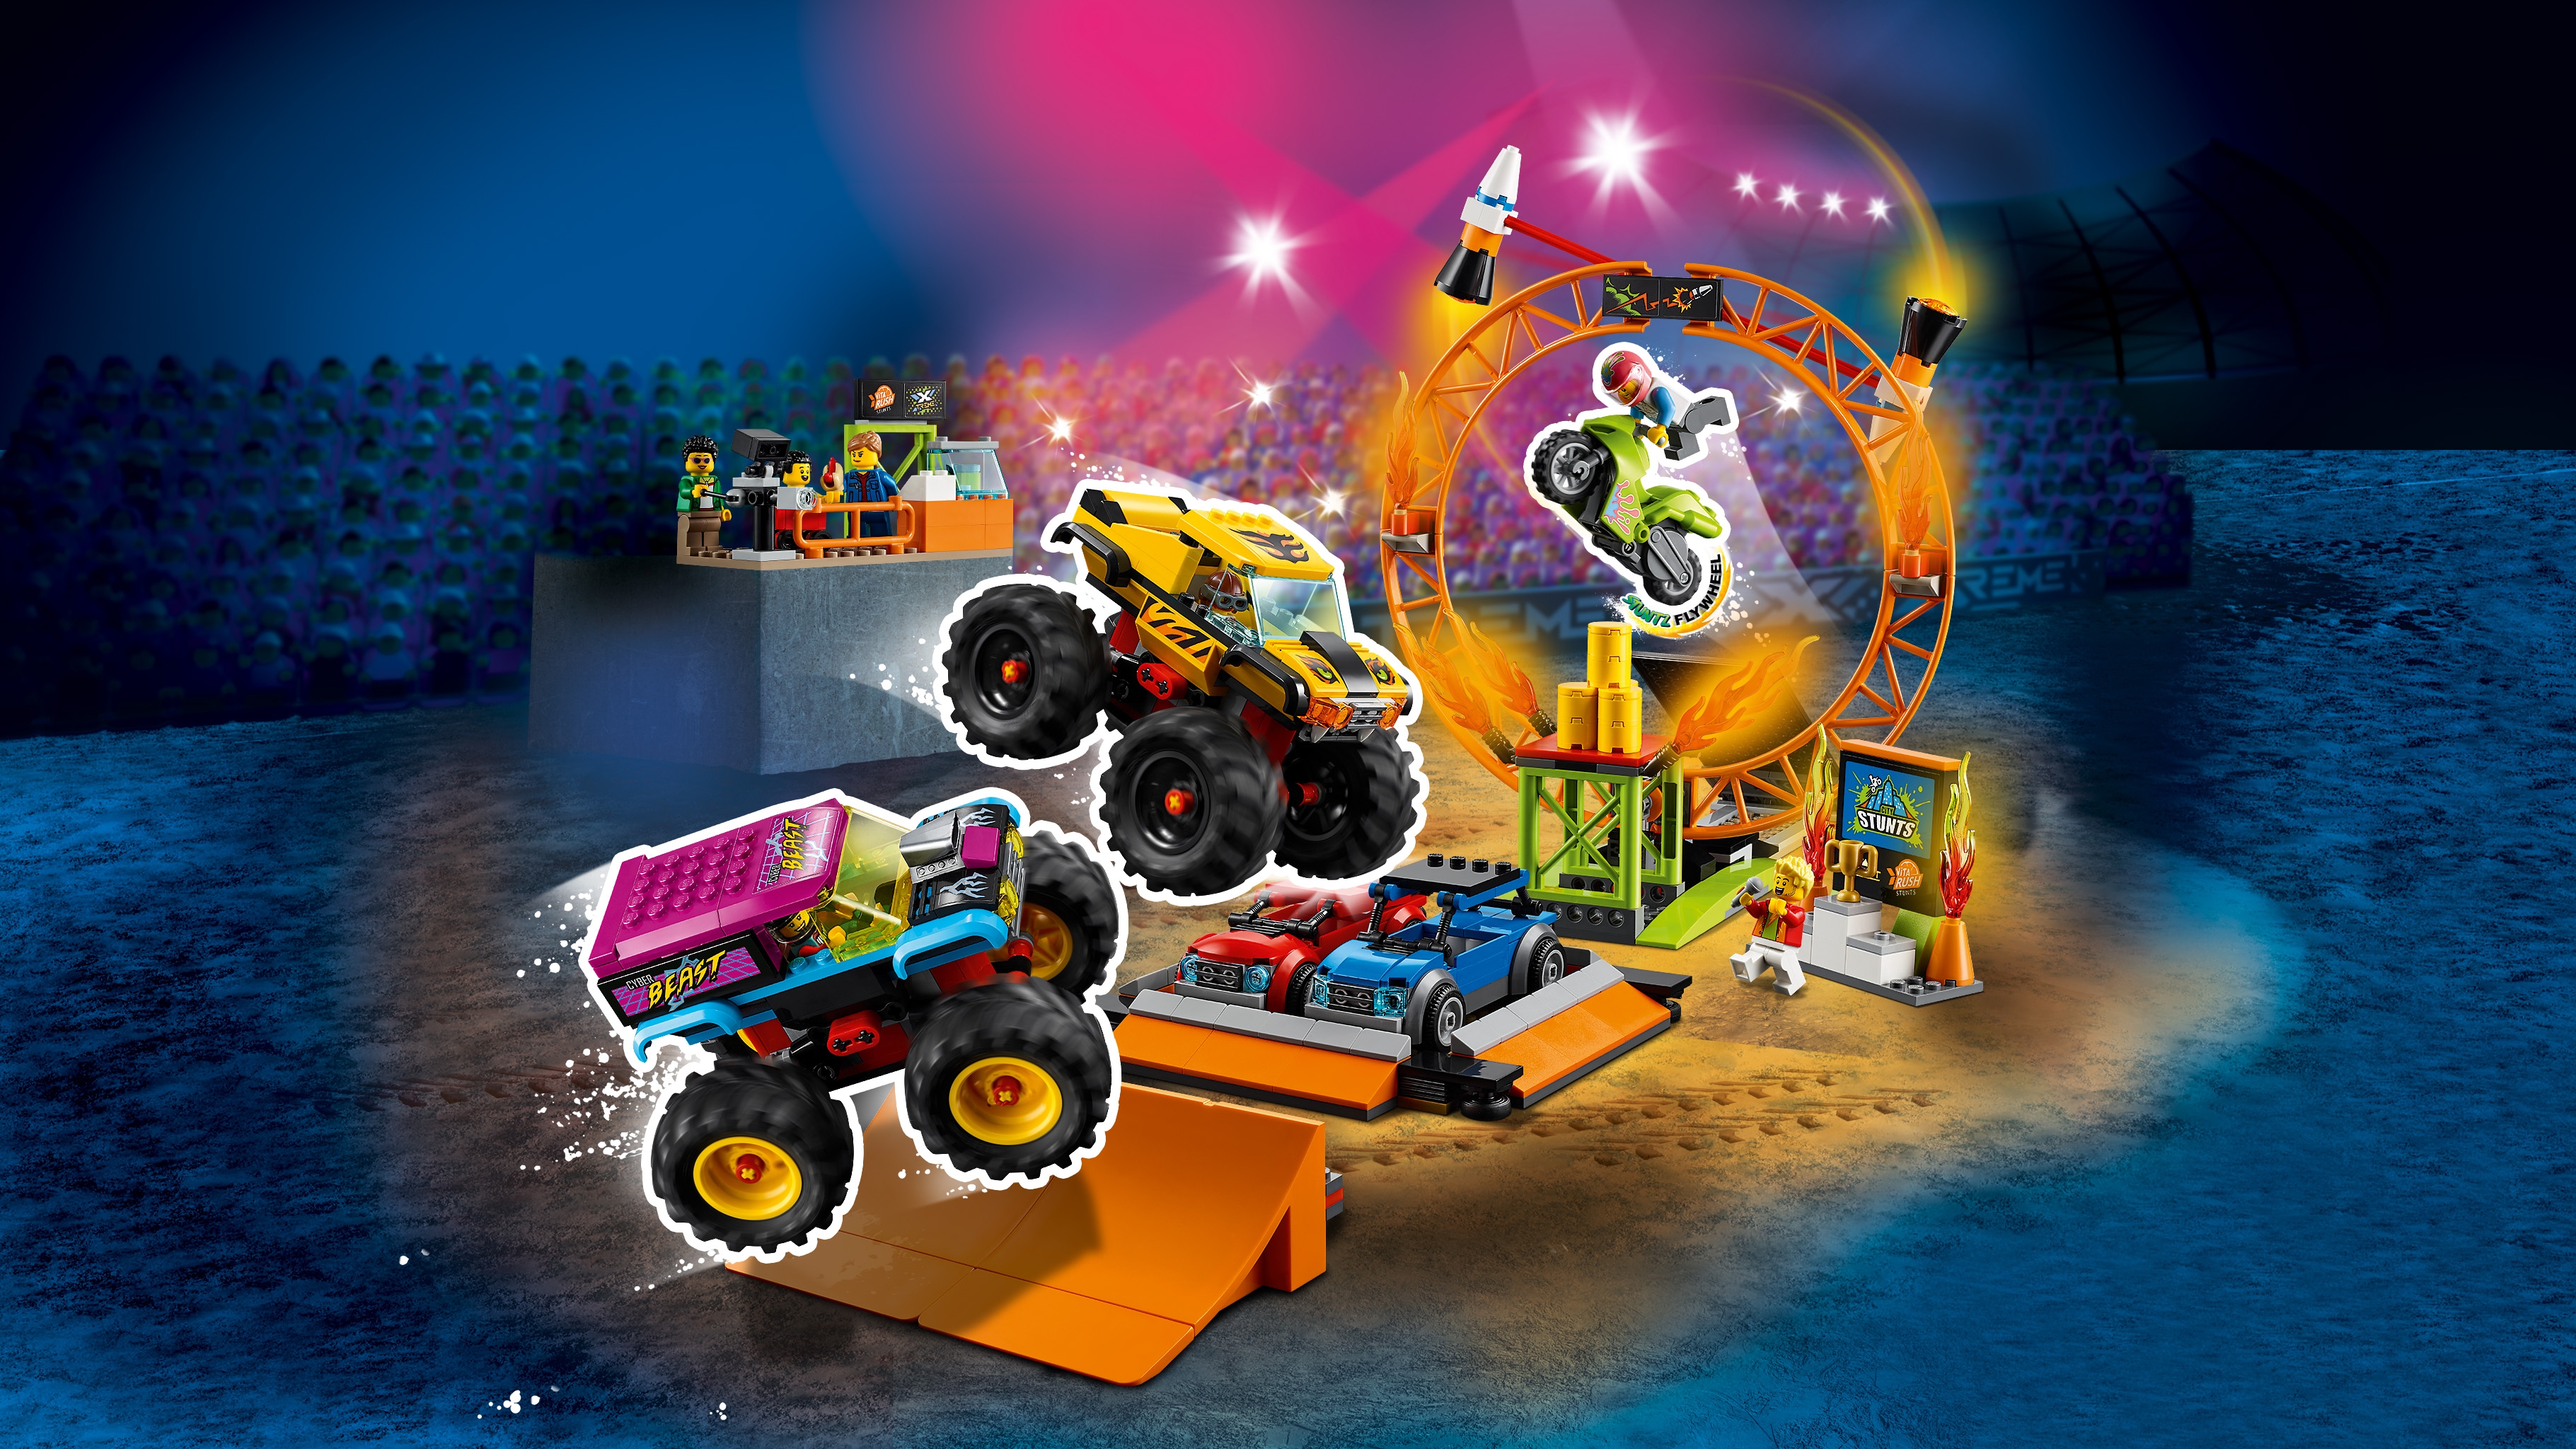 Stunt Show Arena 60295 - City Sets for kids LEGO.com LEGO® 